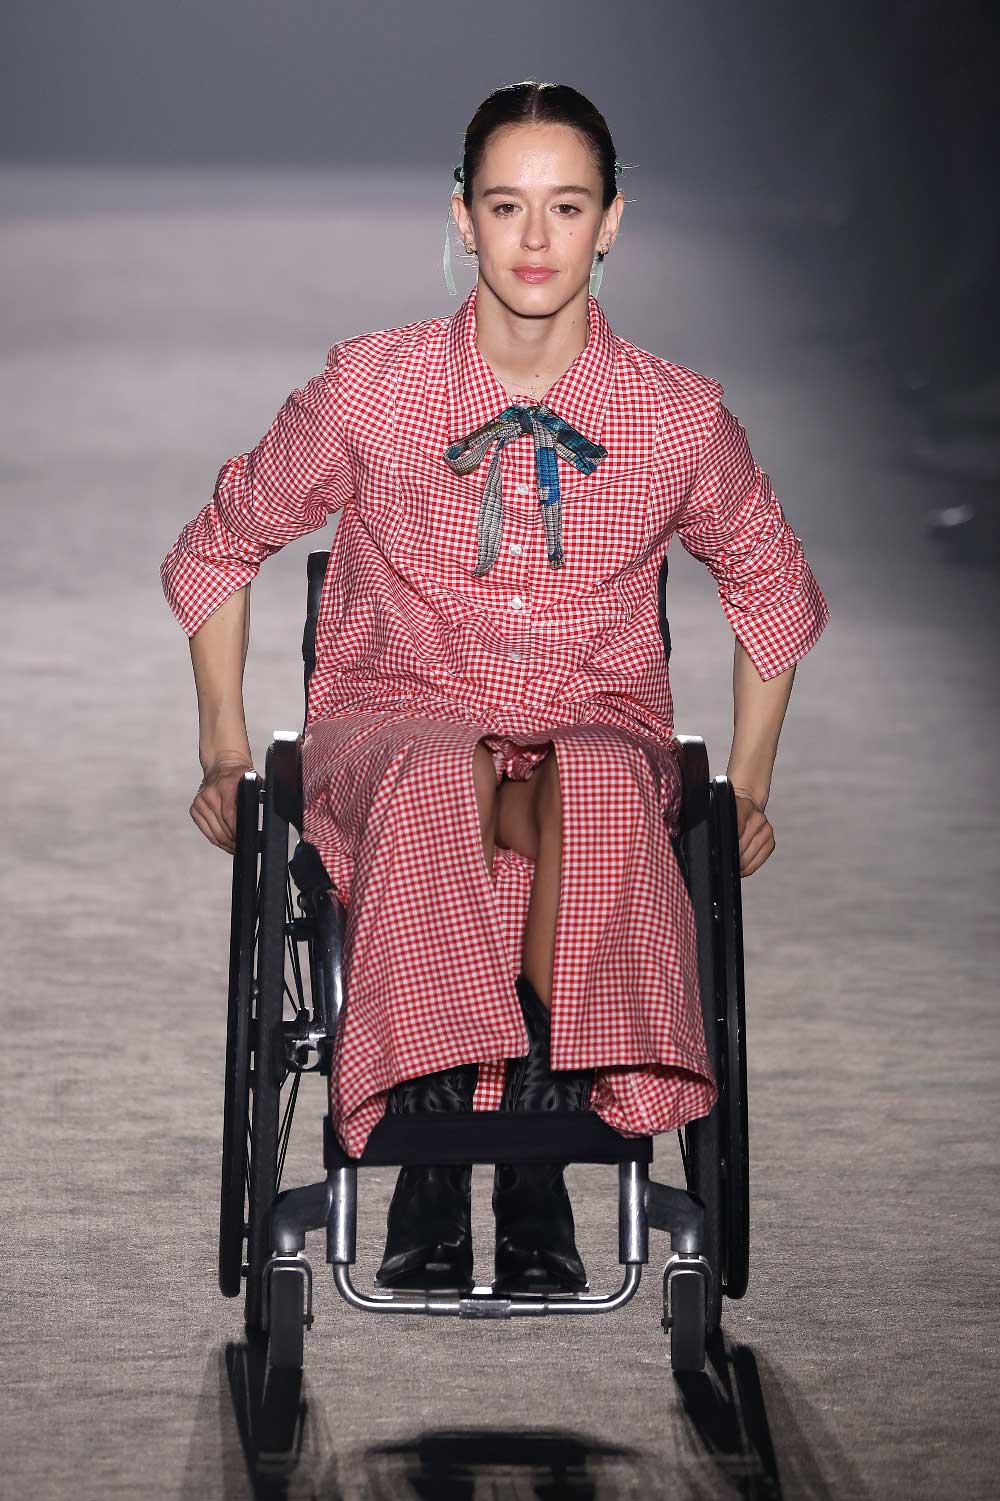 moda para discapacitados en 080 barcelona fashion